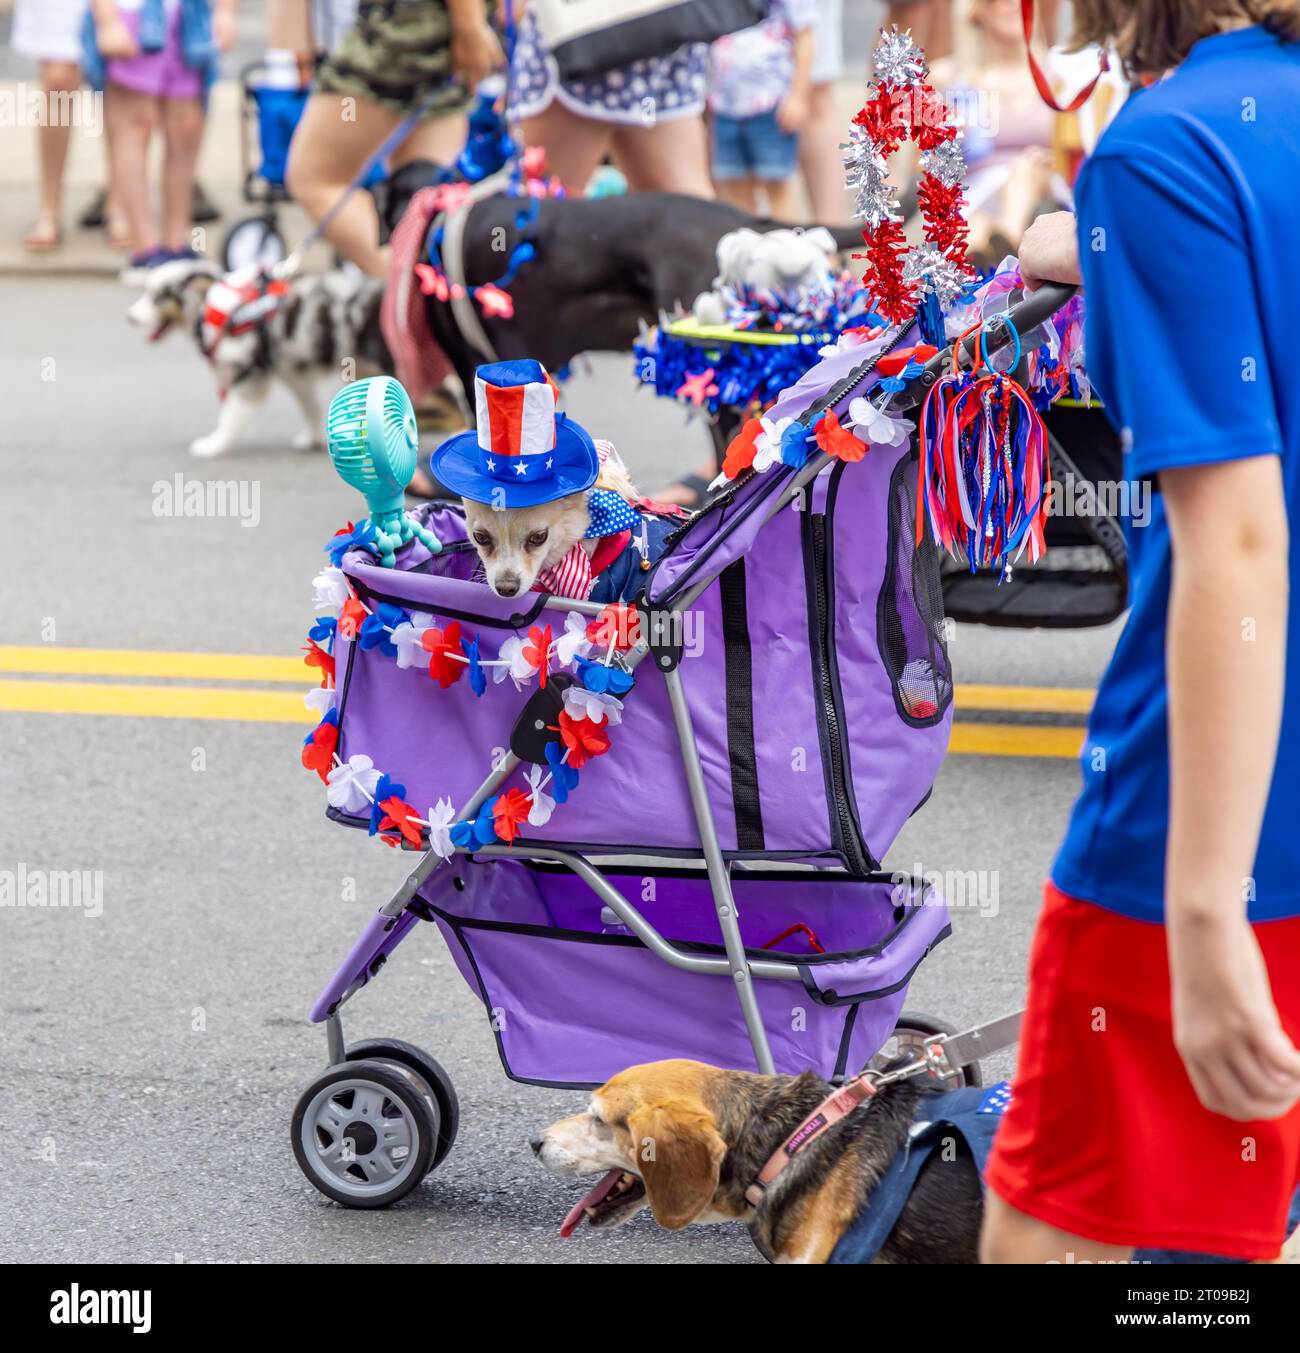 Un petit chien en costume chevauchant dans une voiture d'enfant violette dans un défilé Banque D'Images